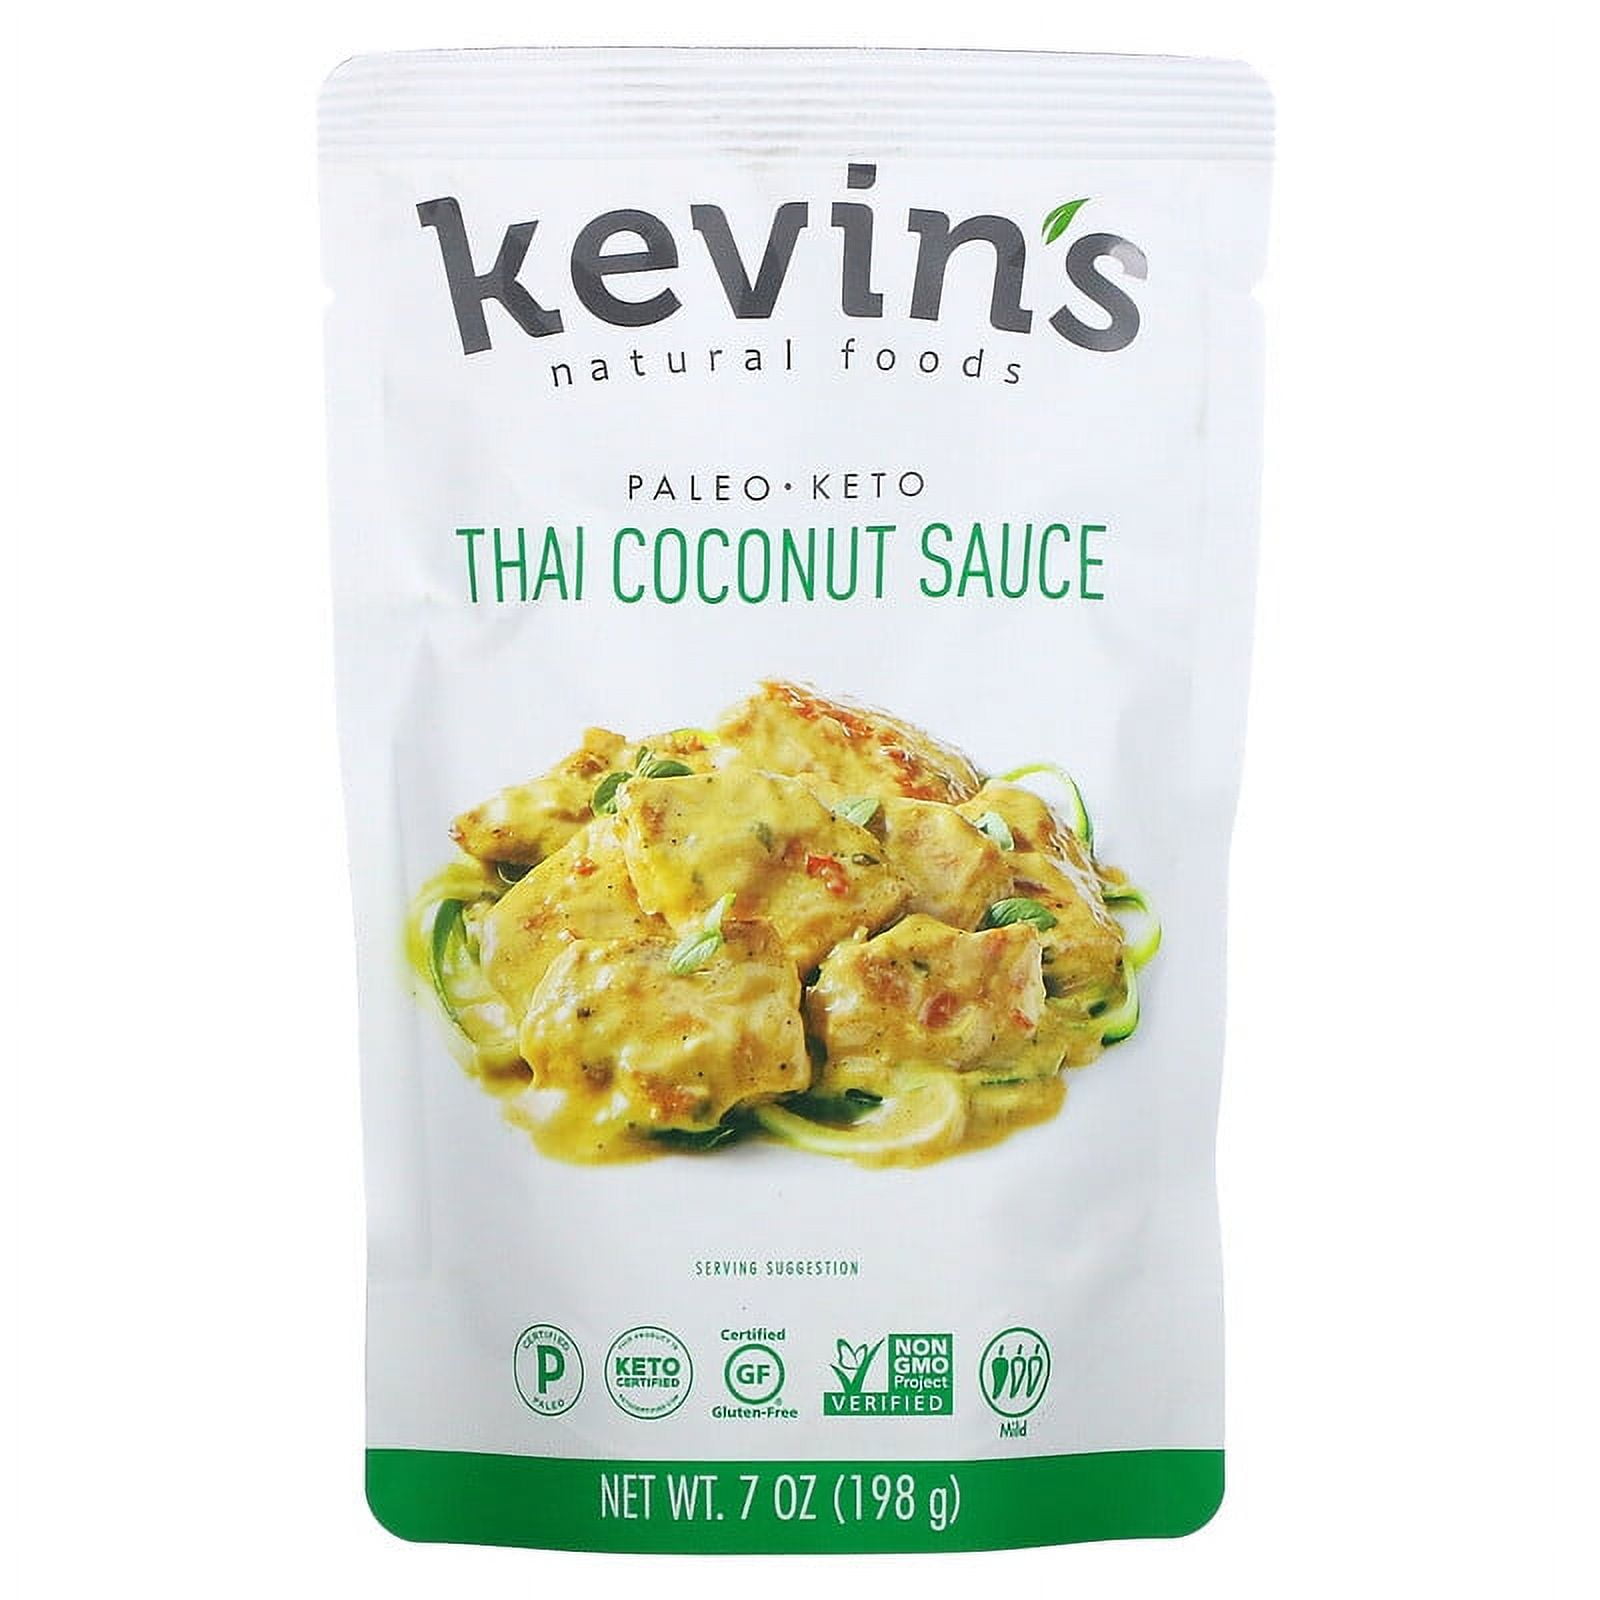 Kevin S Natural Foods Thai Coconut Sauce 7 Oz 06c64874 D575 4d51 Bcbe 238d010ace2f.343735ce890a9d0483aff615b9023e3e 